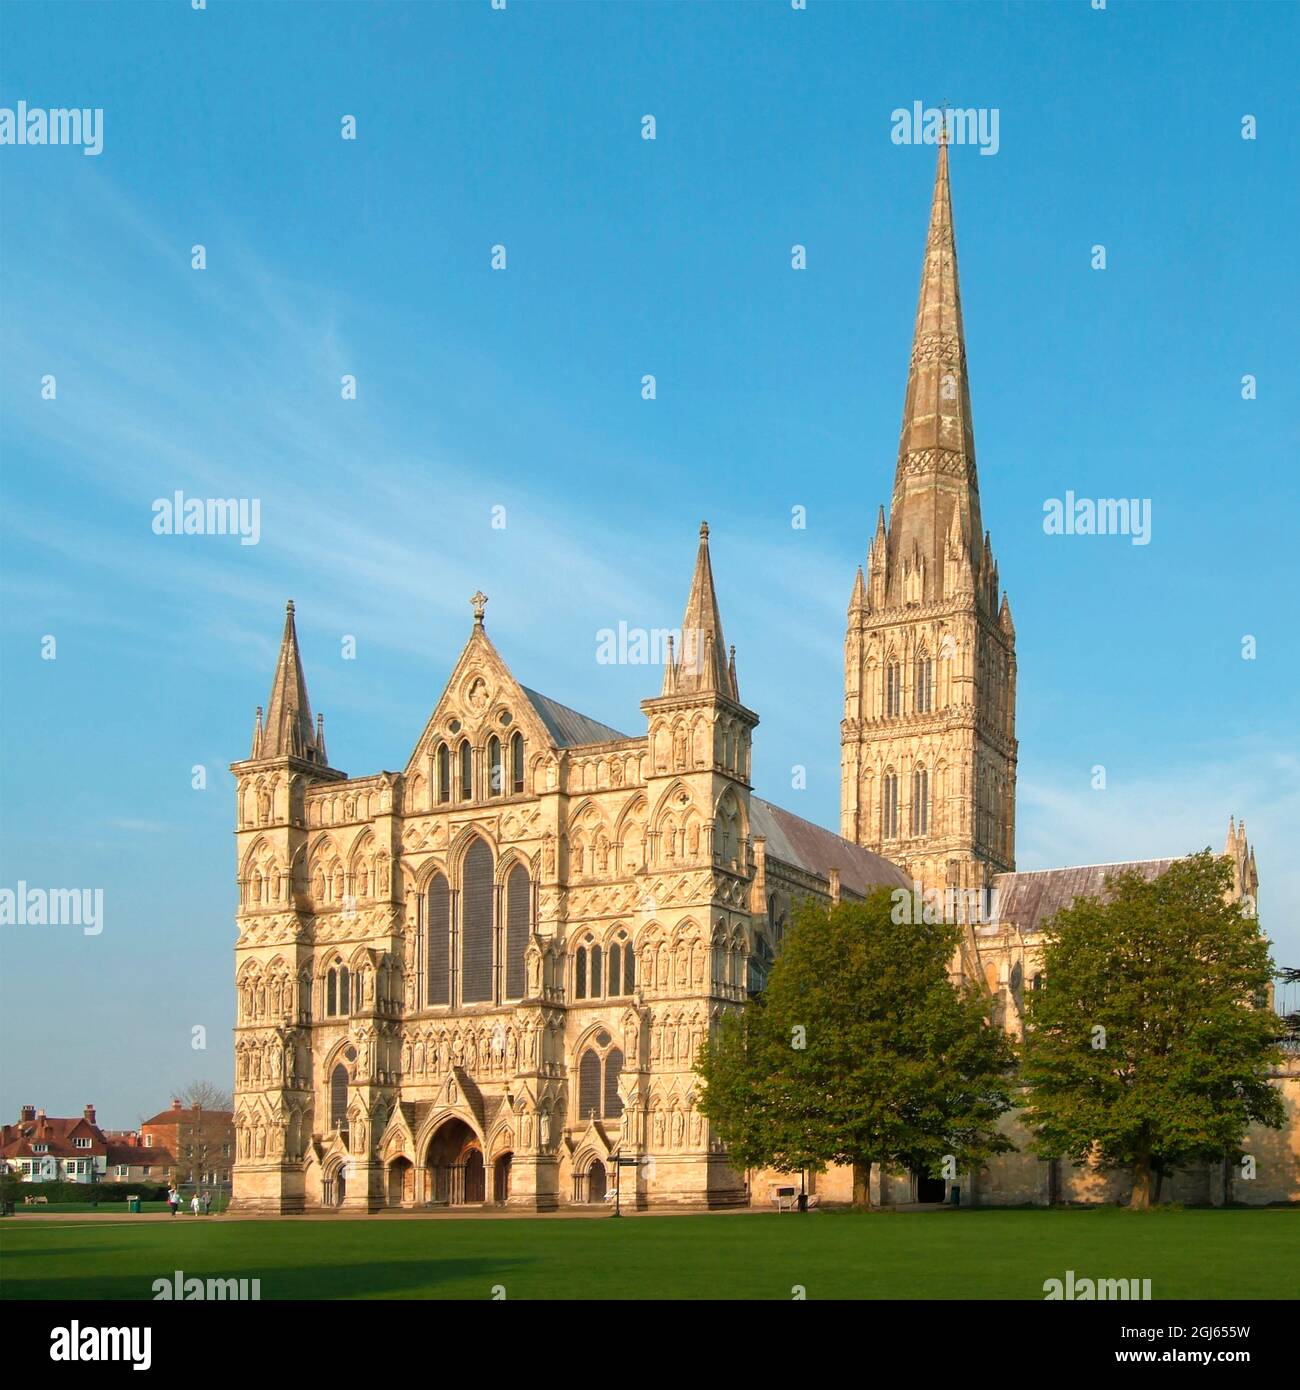 Storico punto di riferimento prima inglese gotico architettura chiesa torre e spire anglicano Salisbury cattedrale West front Wiltshire blu cielo giorno Inghilterra UK Foto Stock